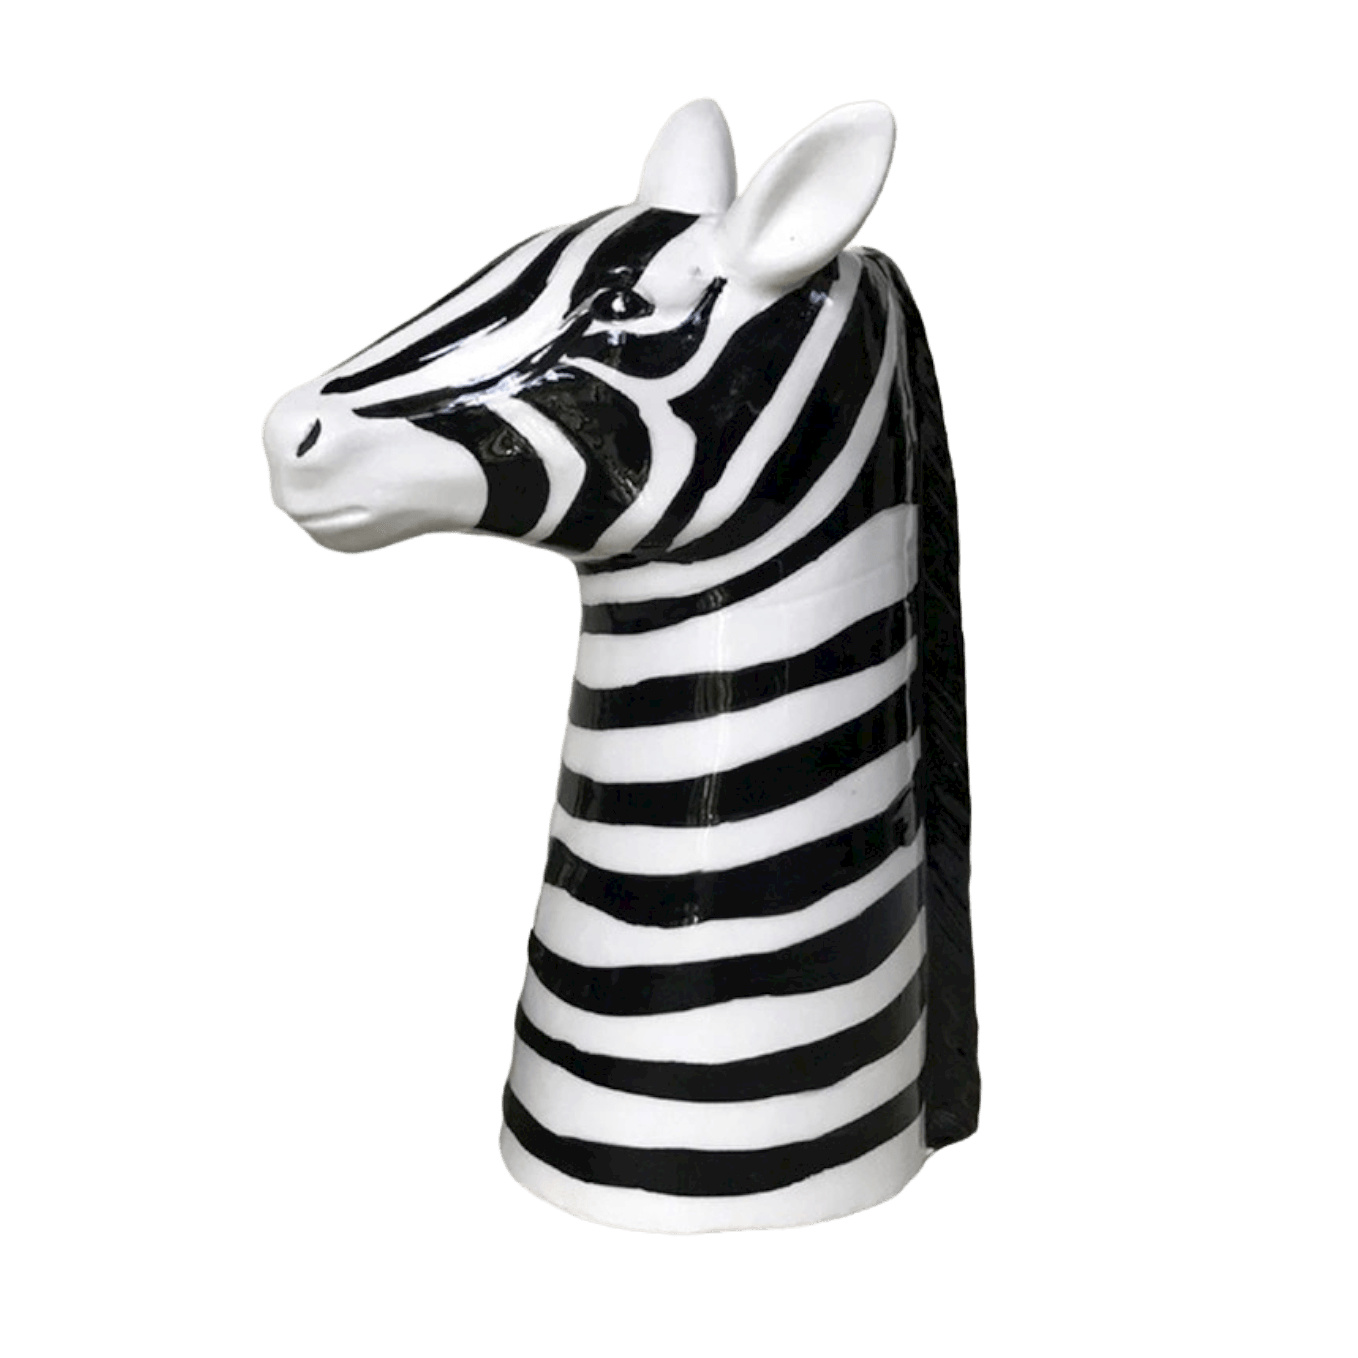 Black and White Zebra Head Ceramic Vase 